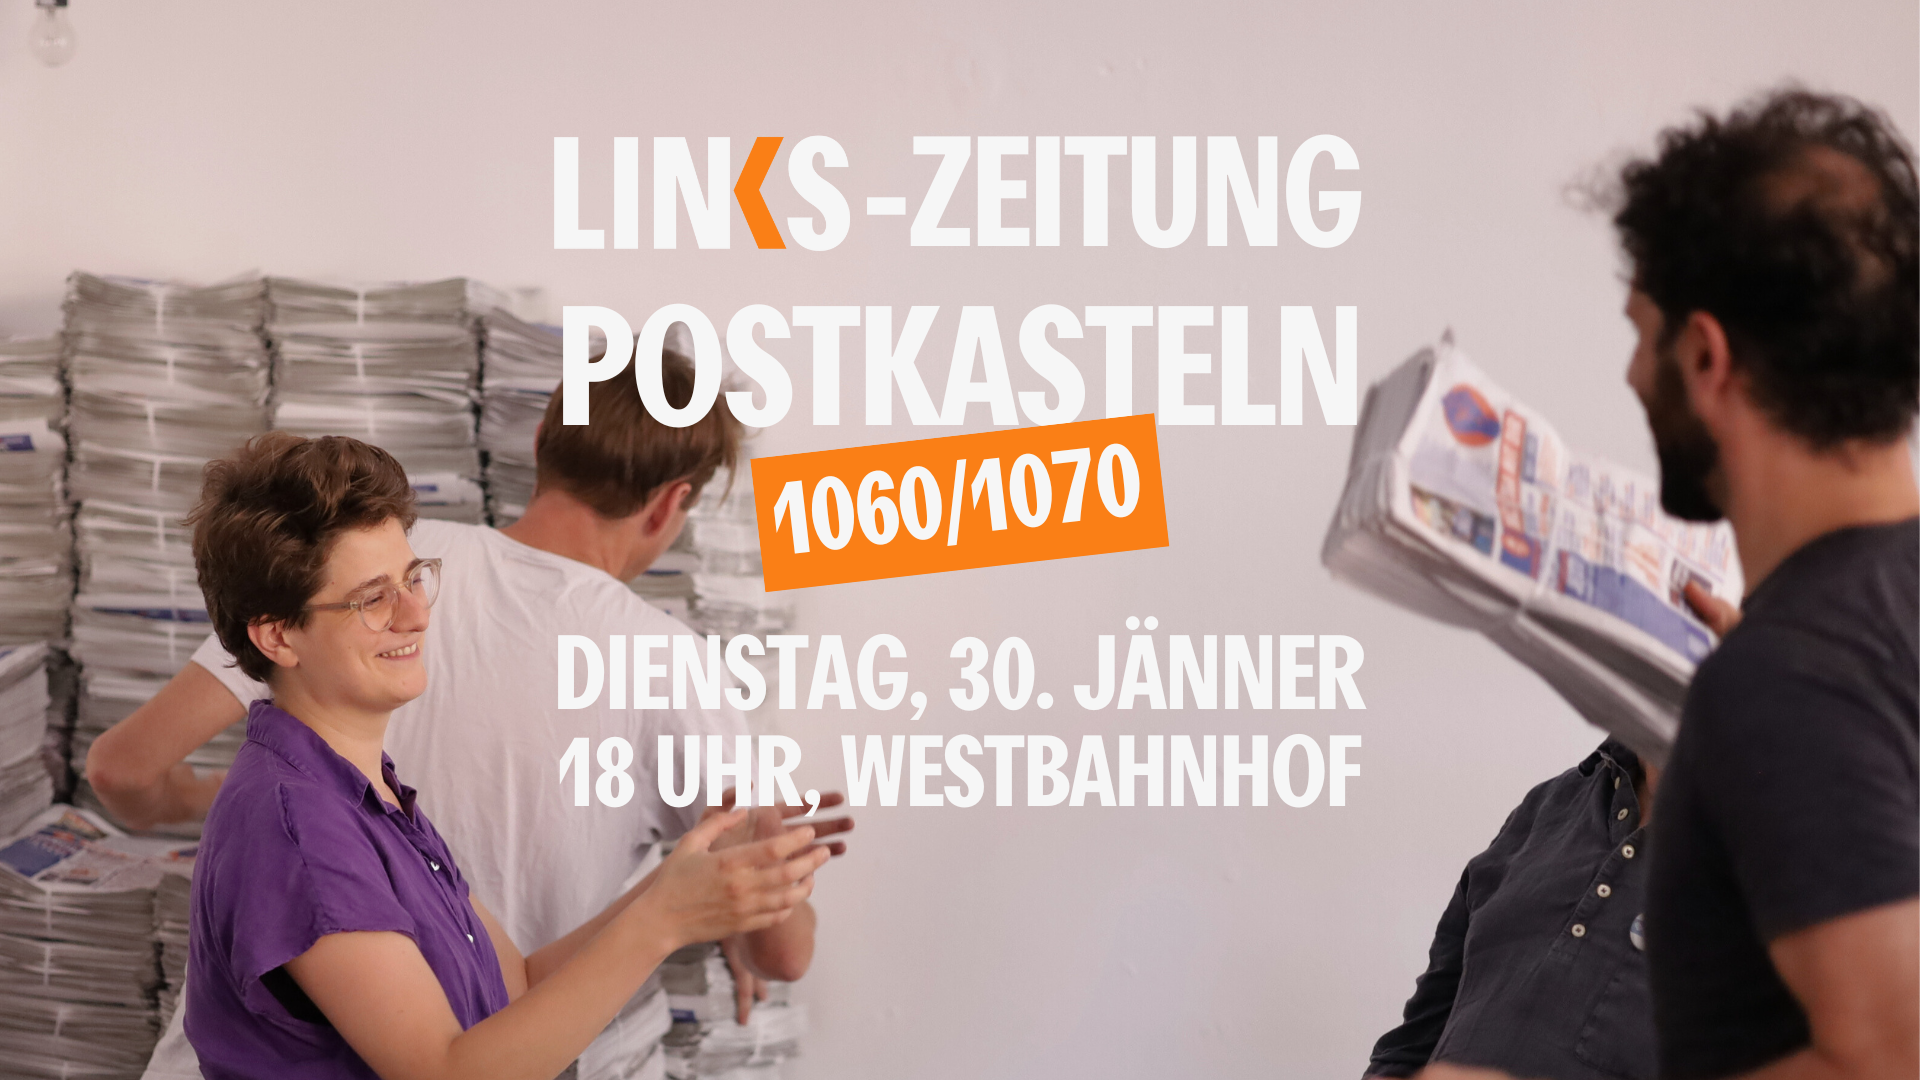 LINKS-Zeitung postkasteln in 1060/1070